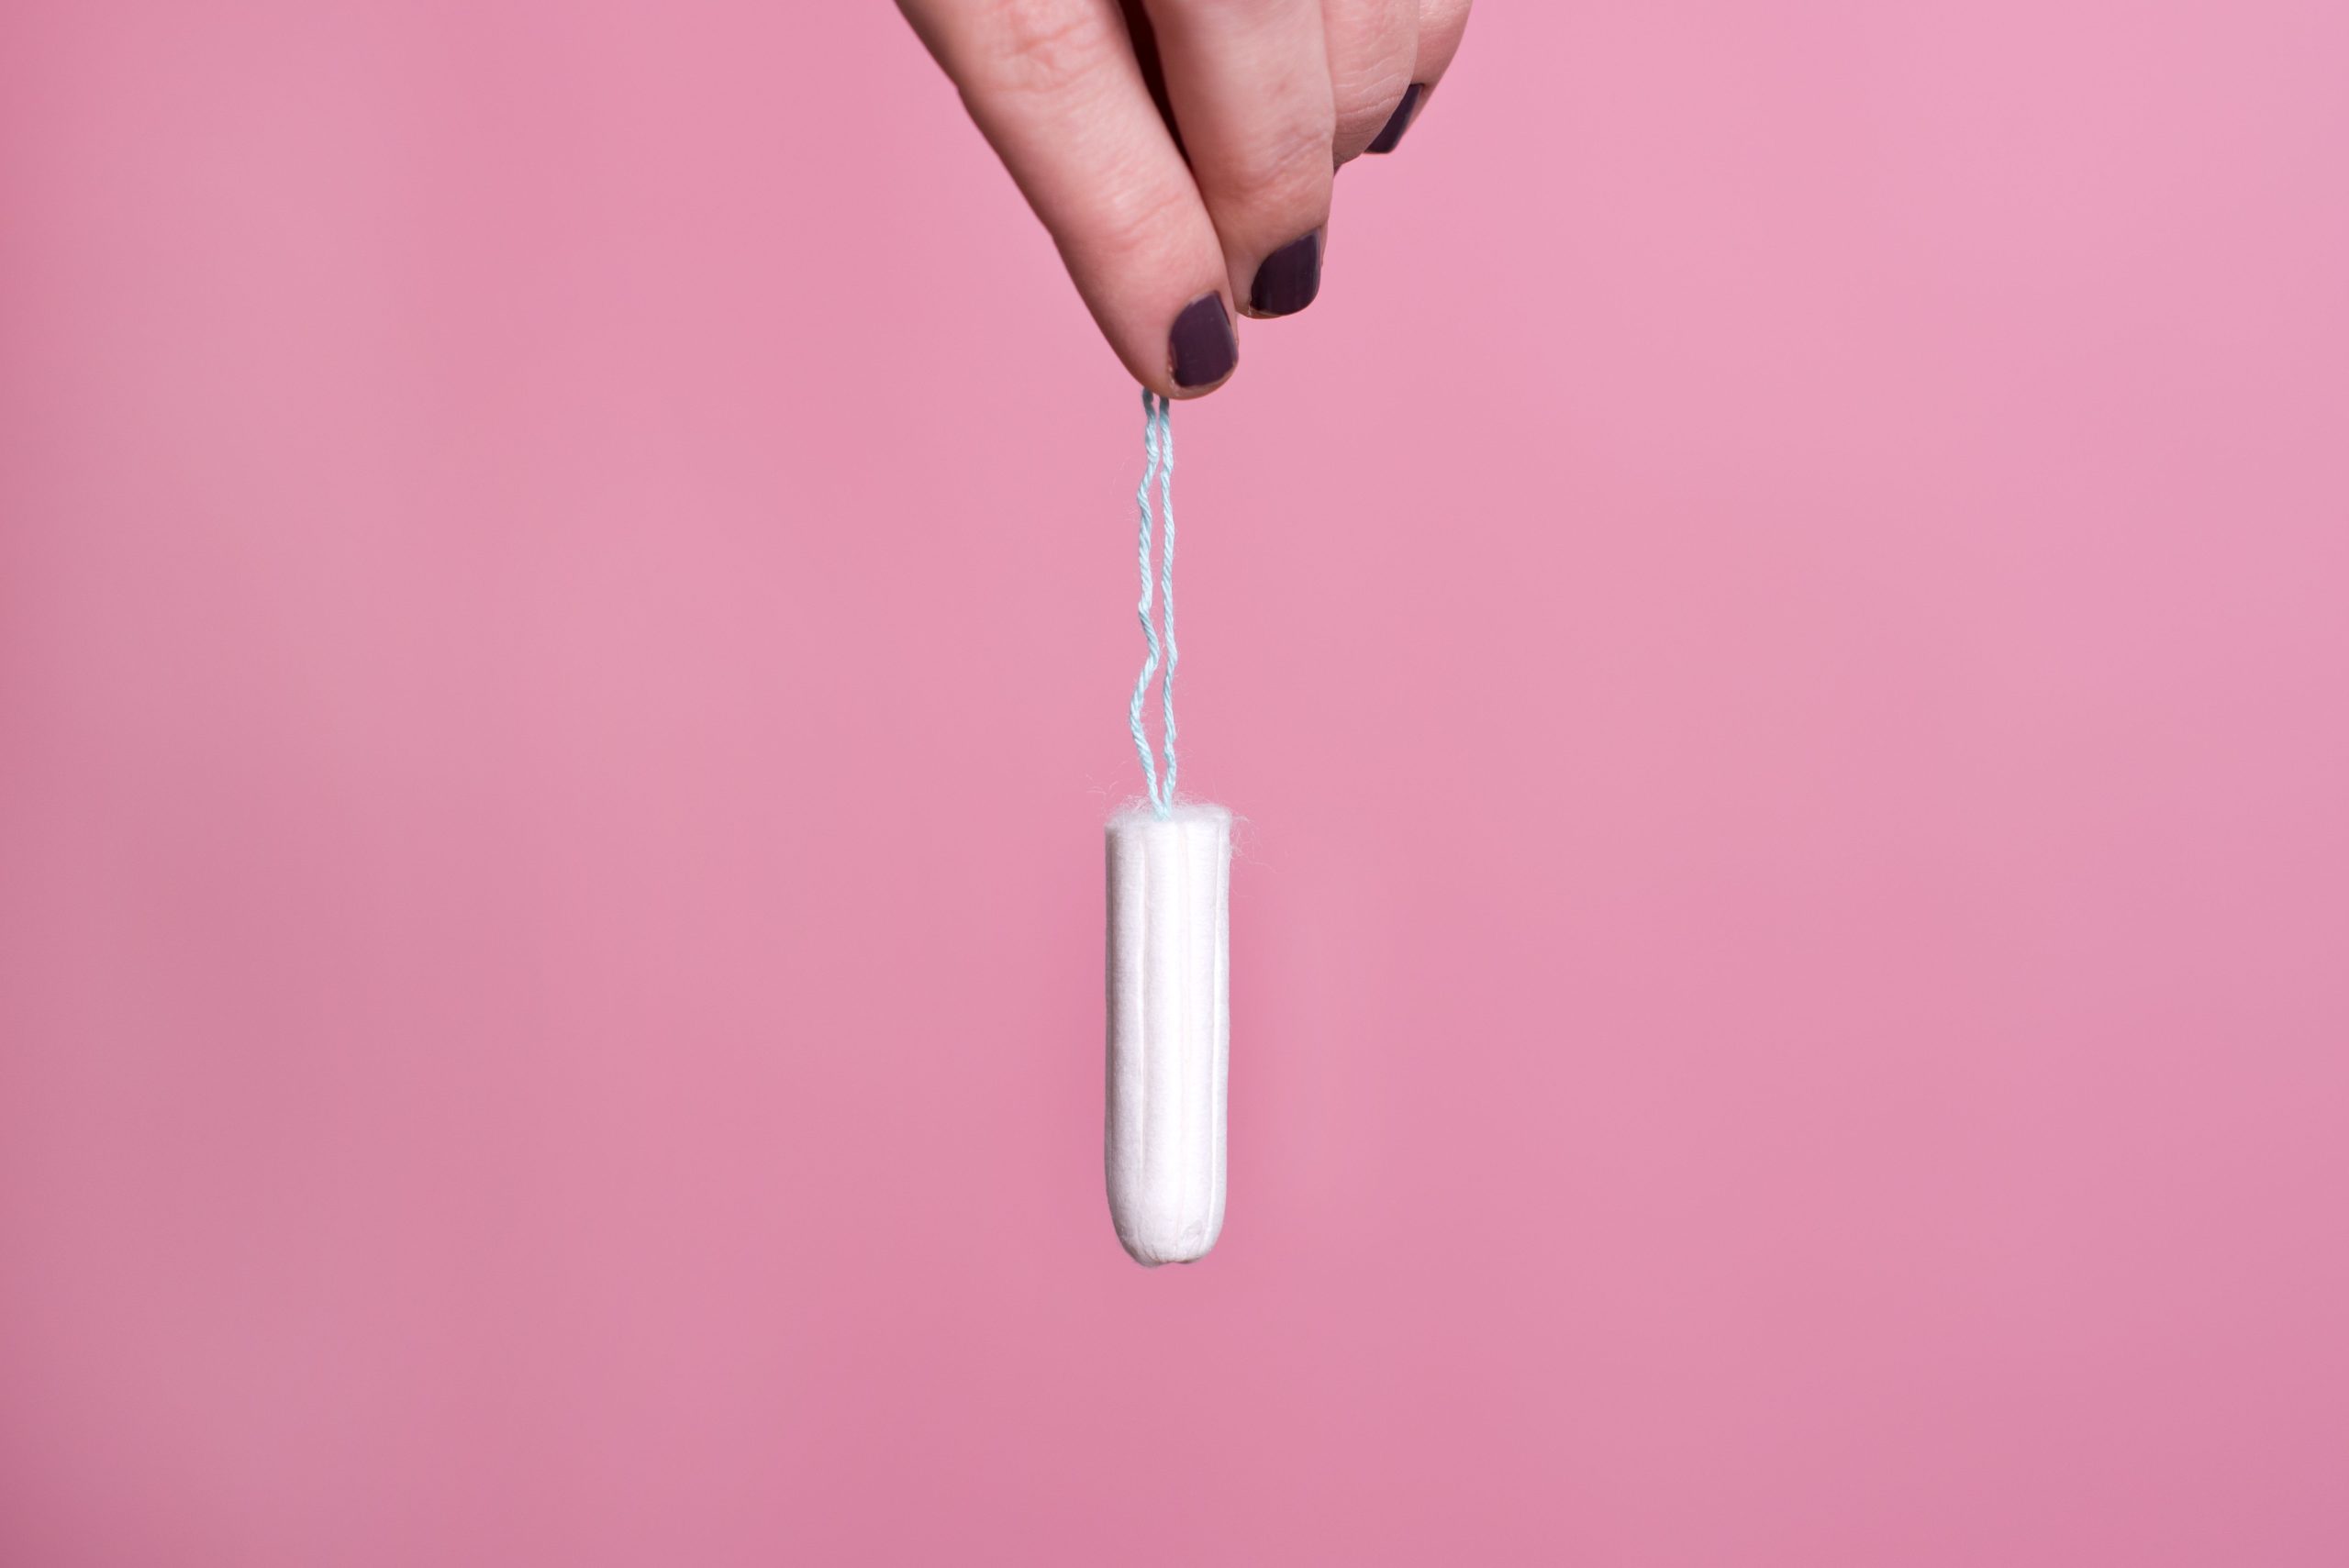 Tampony i kubeczki menstruacyjne – dlaczego są lepsze od tradycyjnych podpasek?